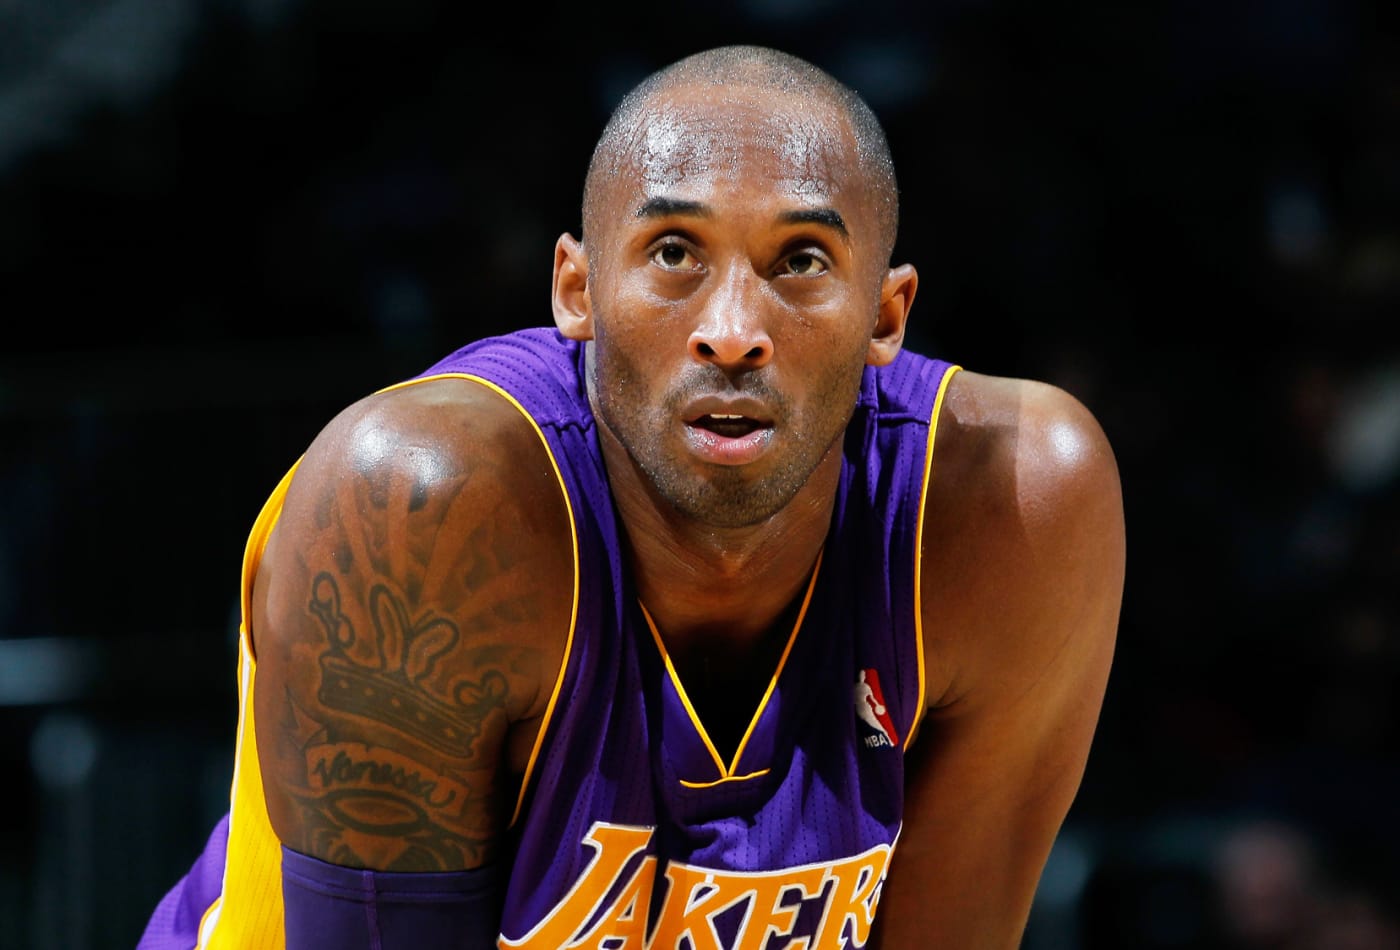 E frikshme/ Vdekja e Kobe Bryant ishte parashikuar që në vitin 2012 nga një person